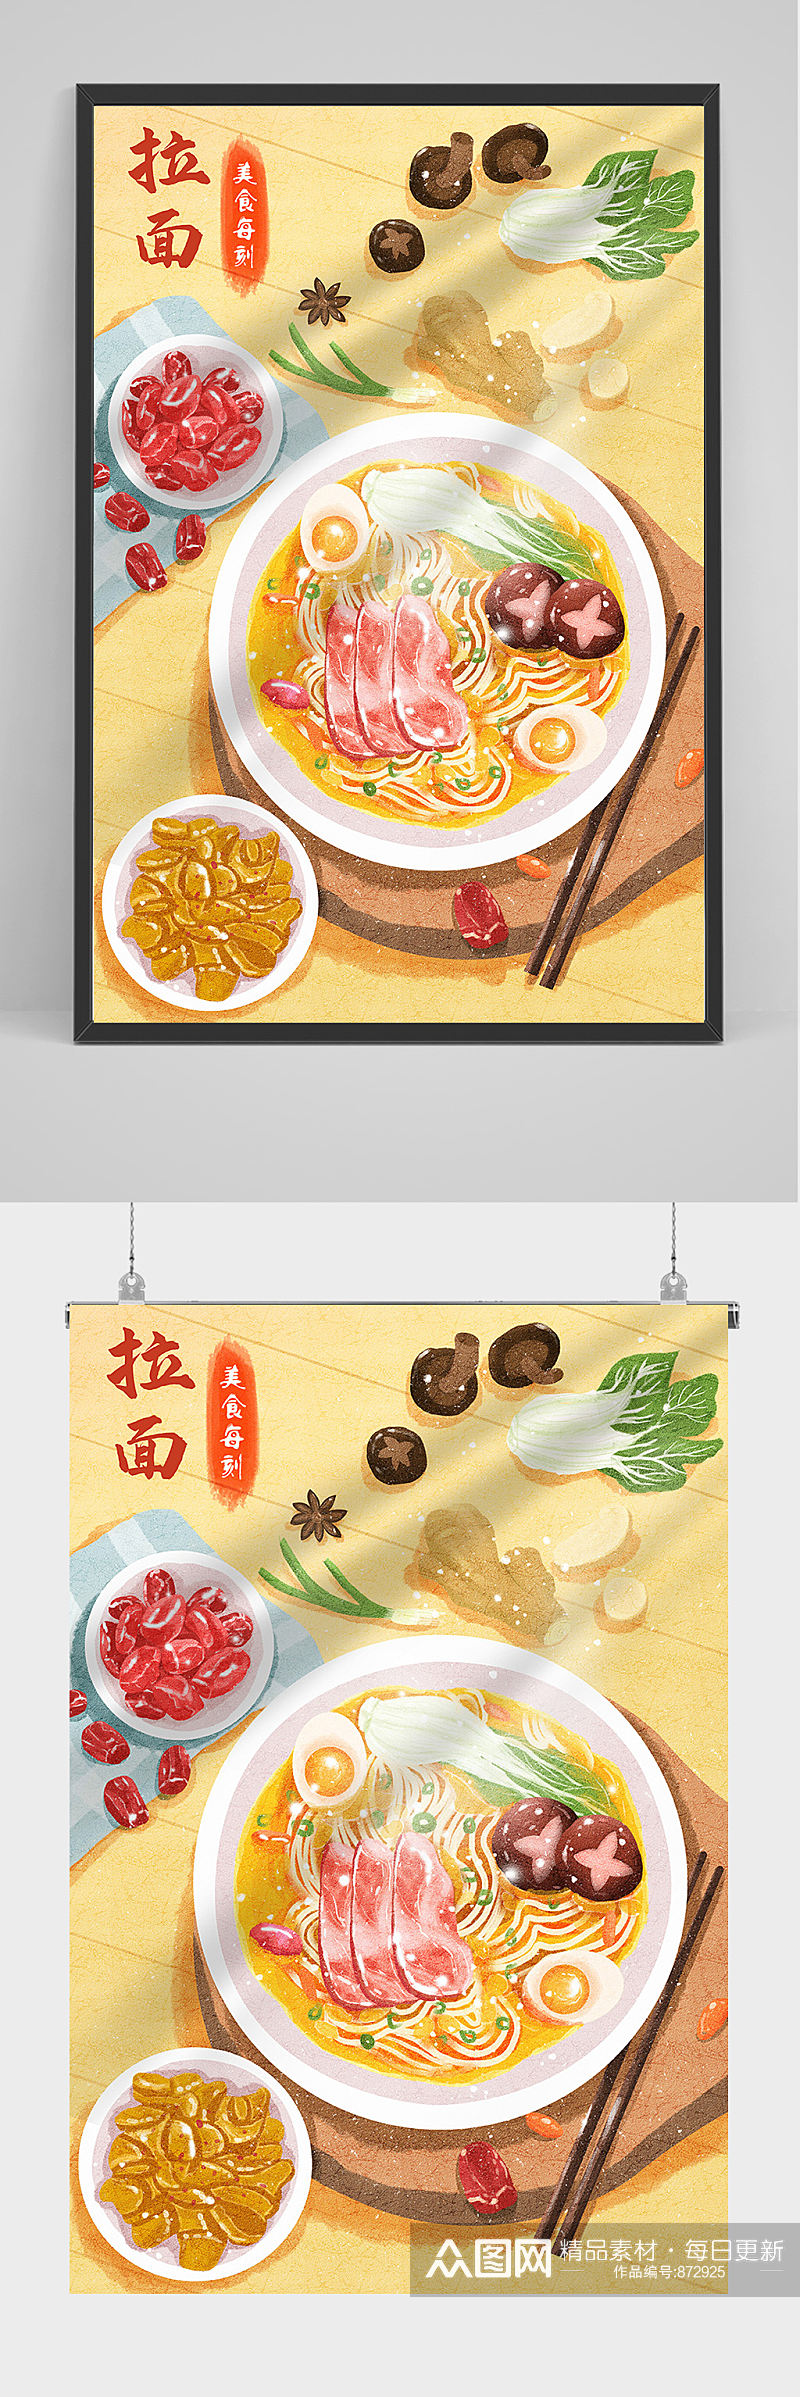 精品手绘美食拉面手绘插画设计 日式拉面海报素材